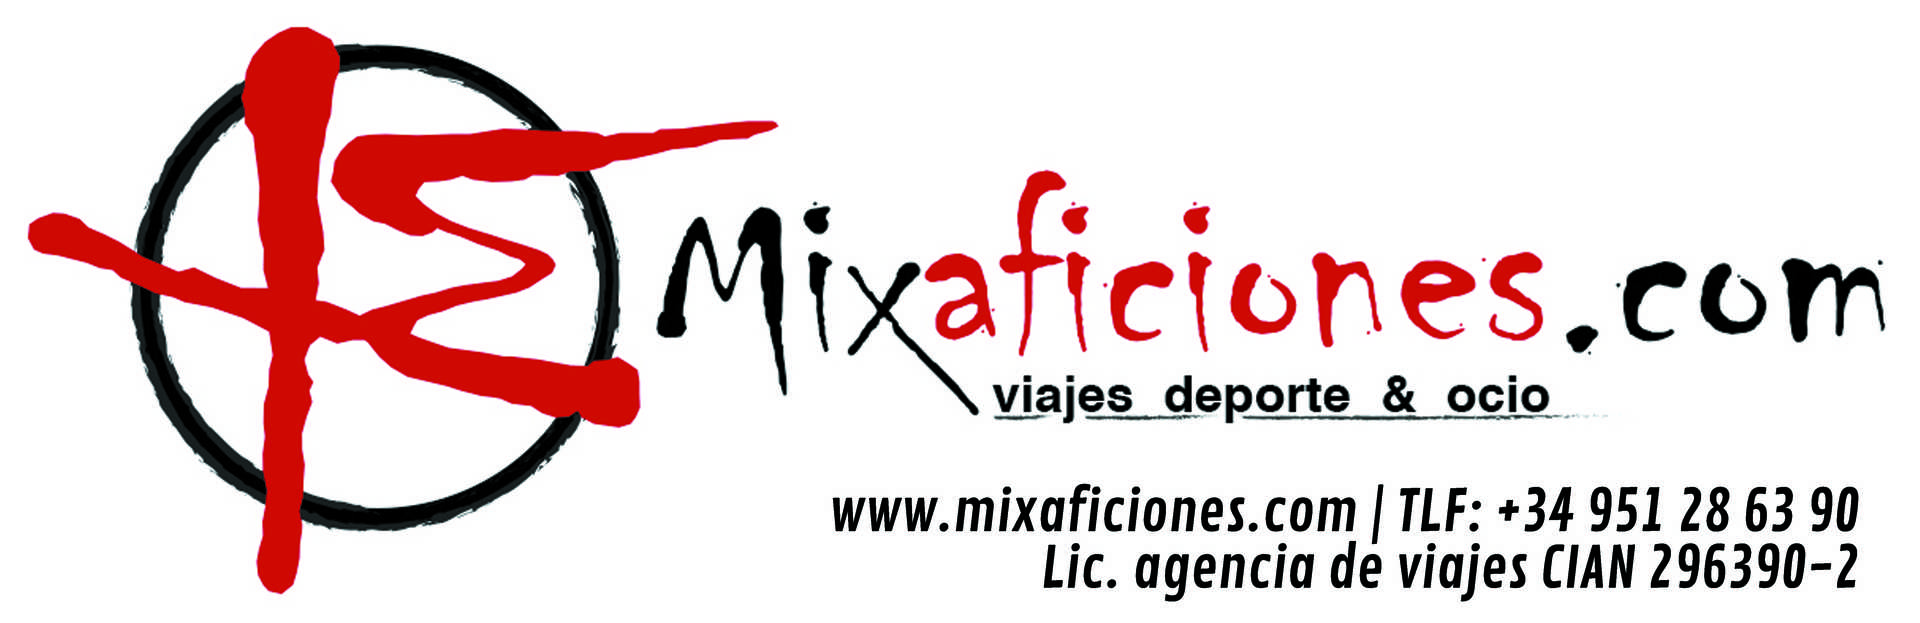 Mixaficiones.com